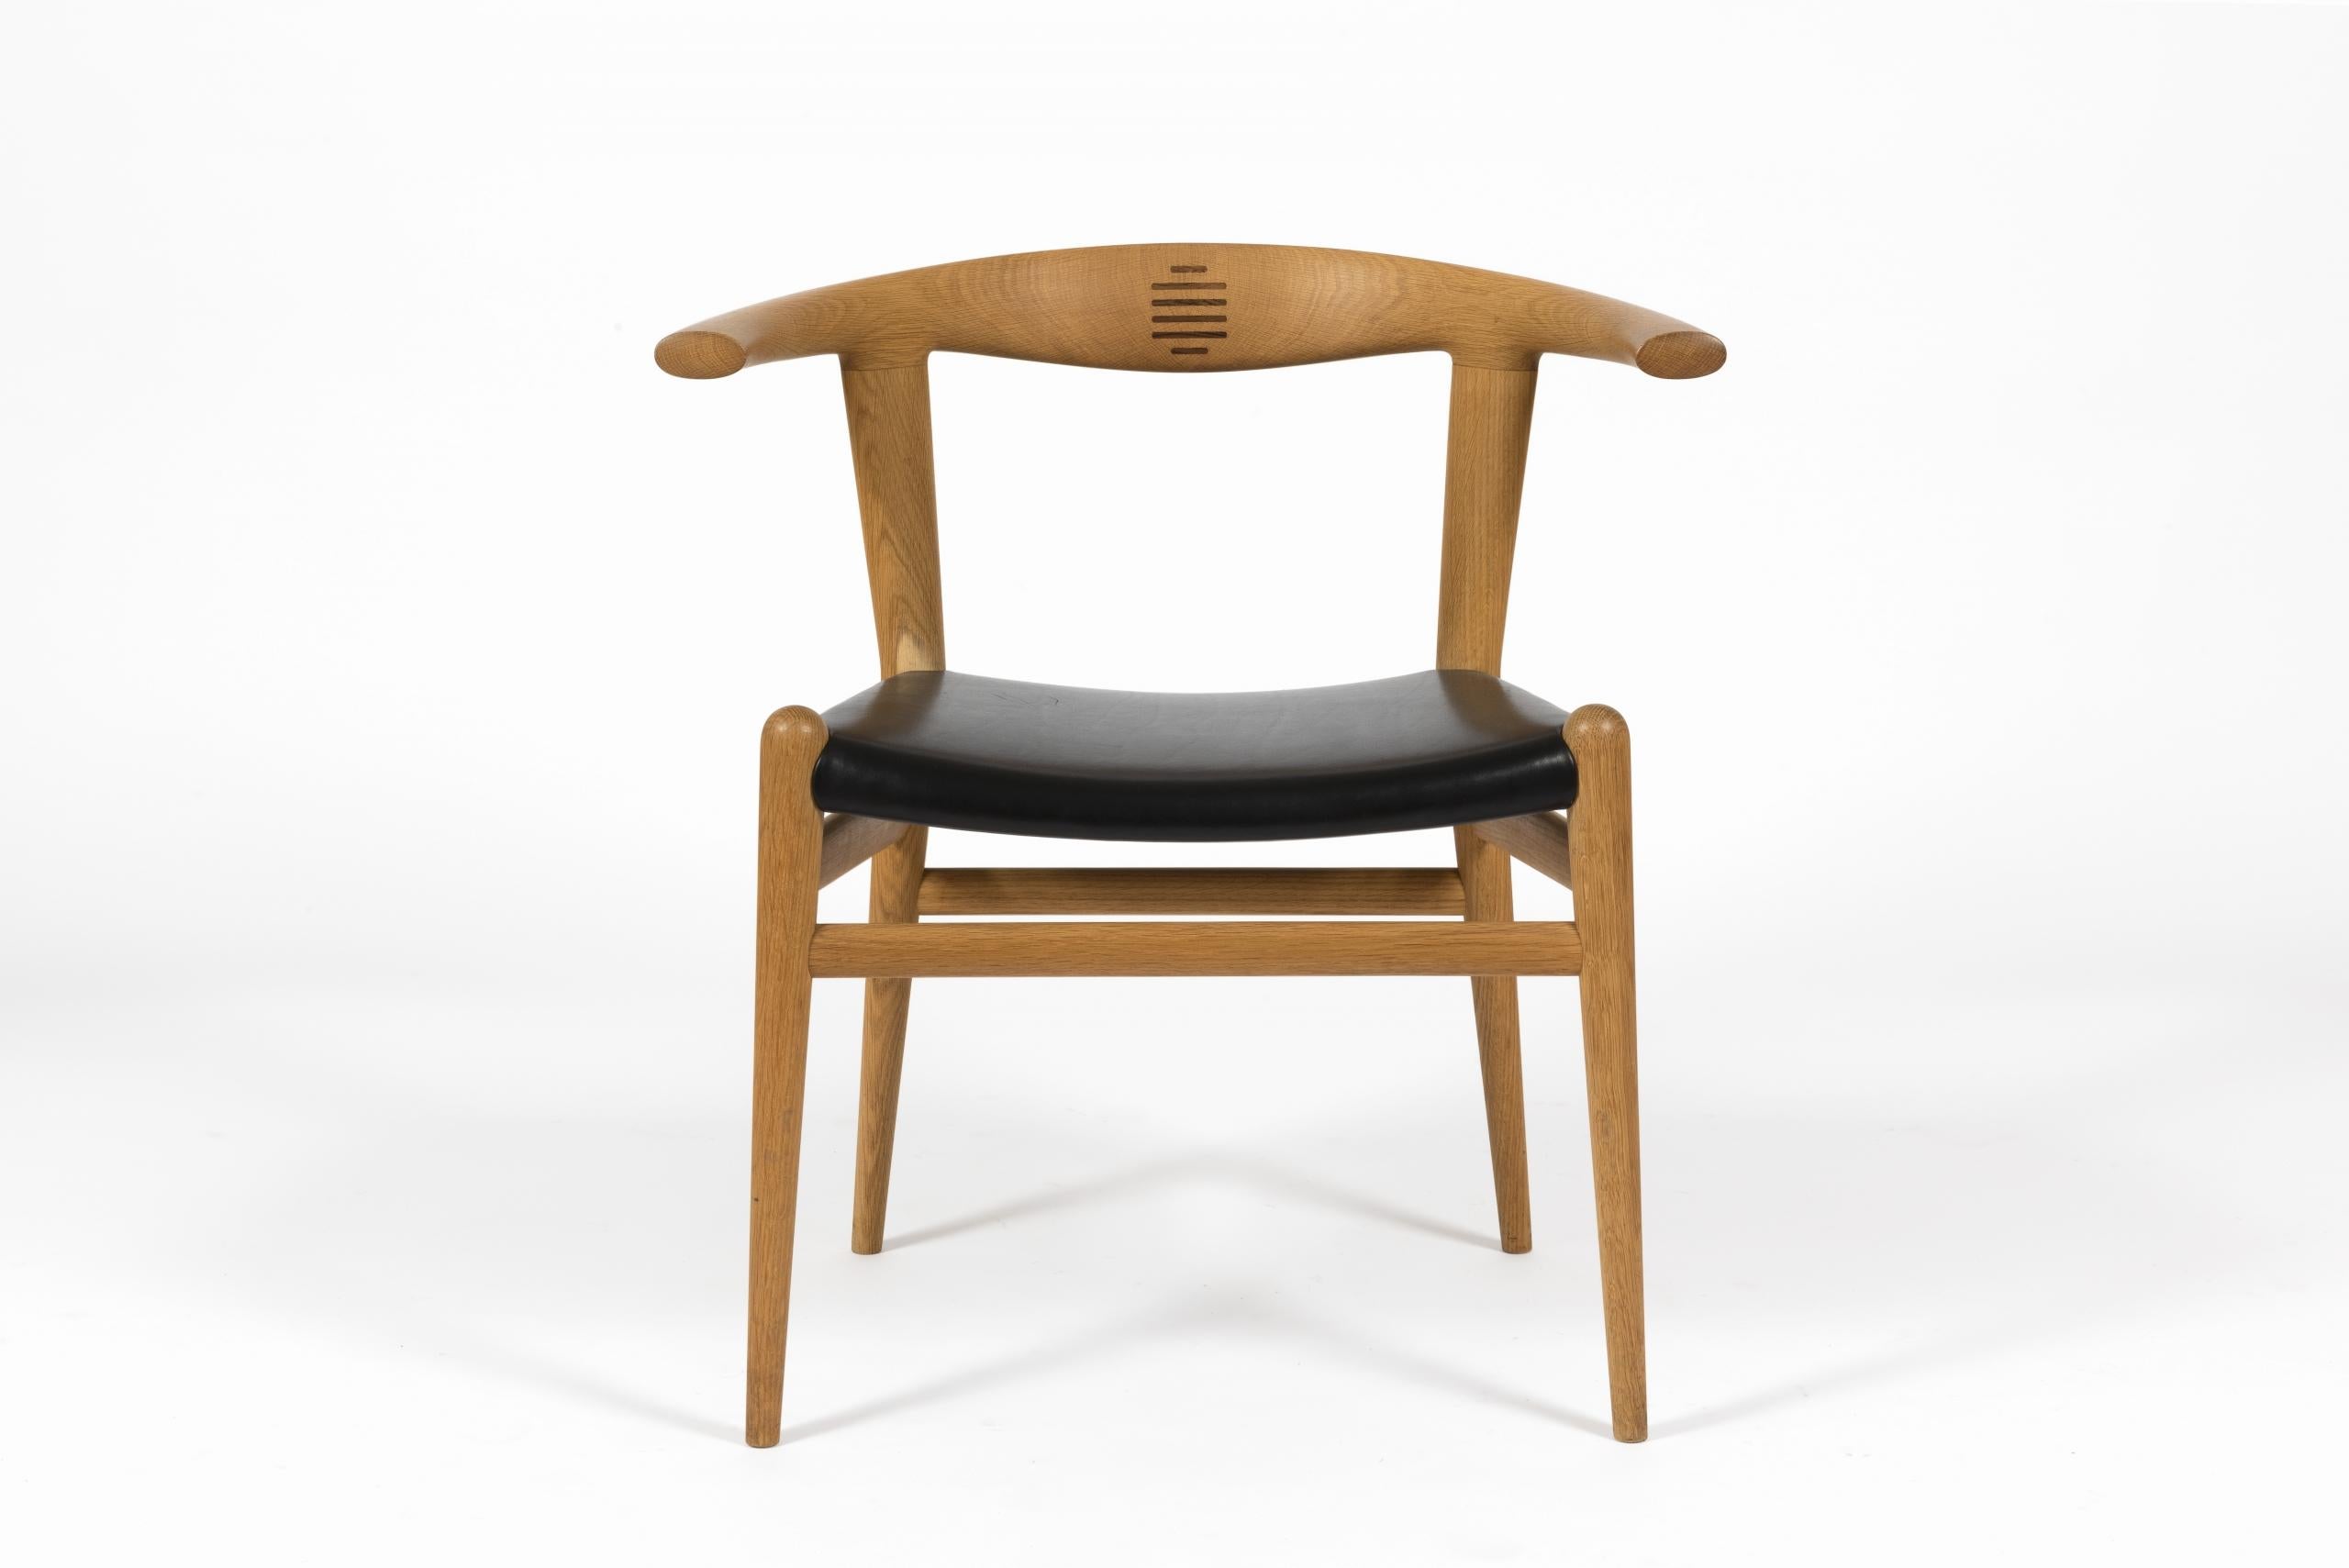 Paire de chaises 'Bull Chair', modèle PP-518 de Hans J. Wegner pour PP Møbler, 1961.

Structure en chêne massif avec incrustation sur le dossier en palissandre et siège recouvert de cuir noir.